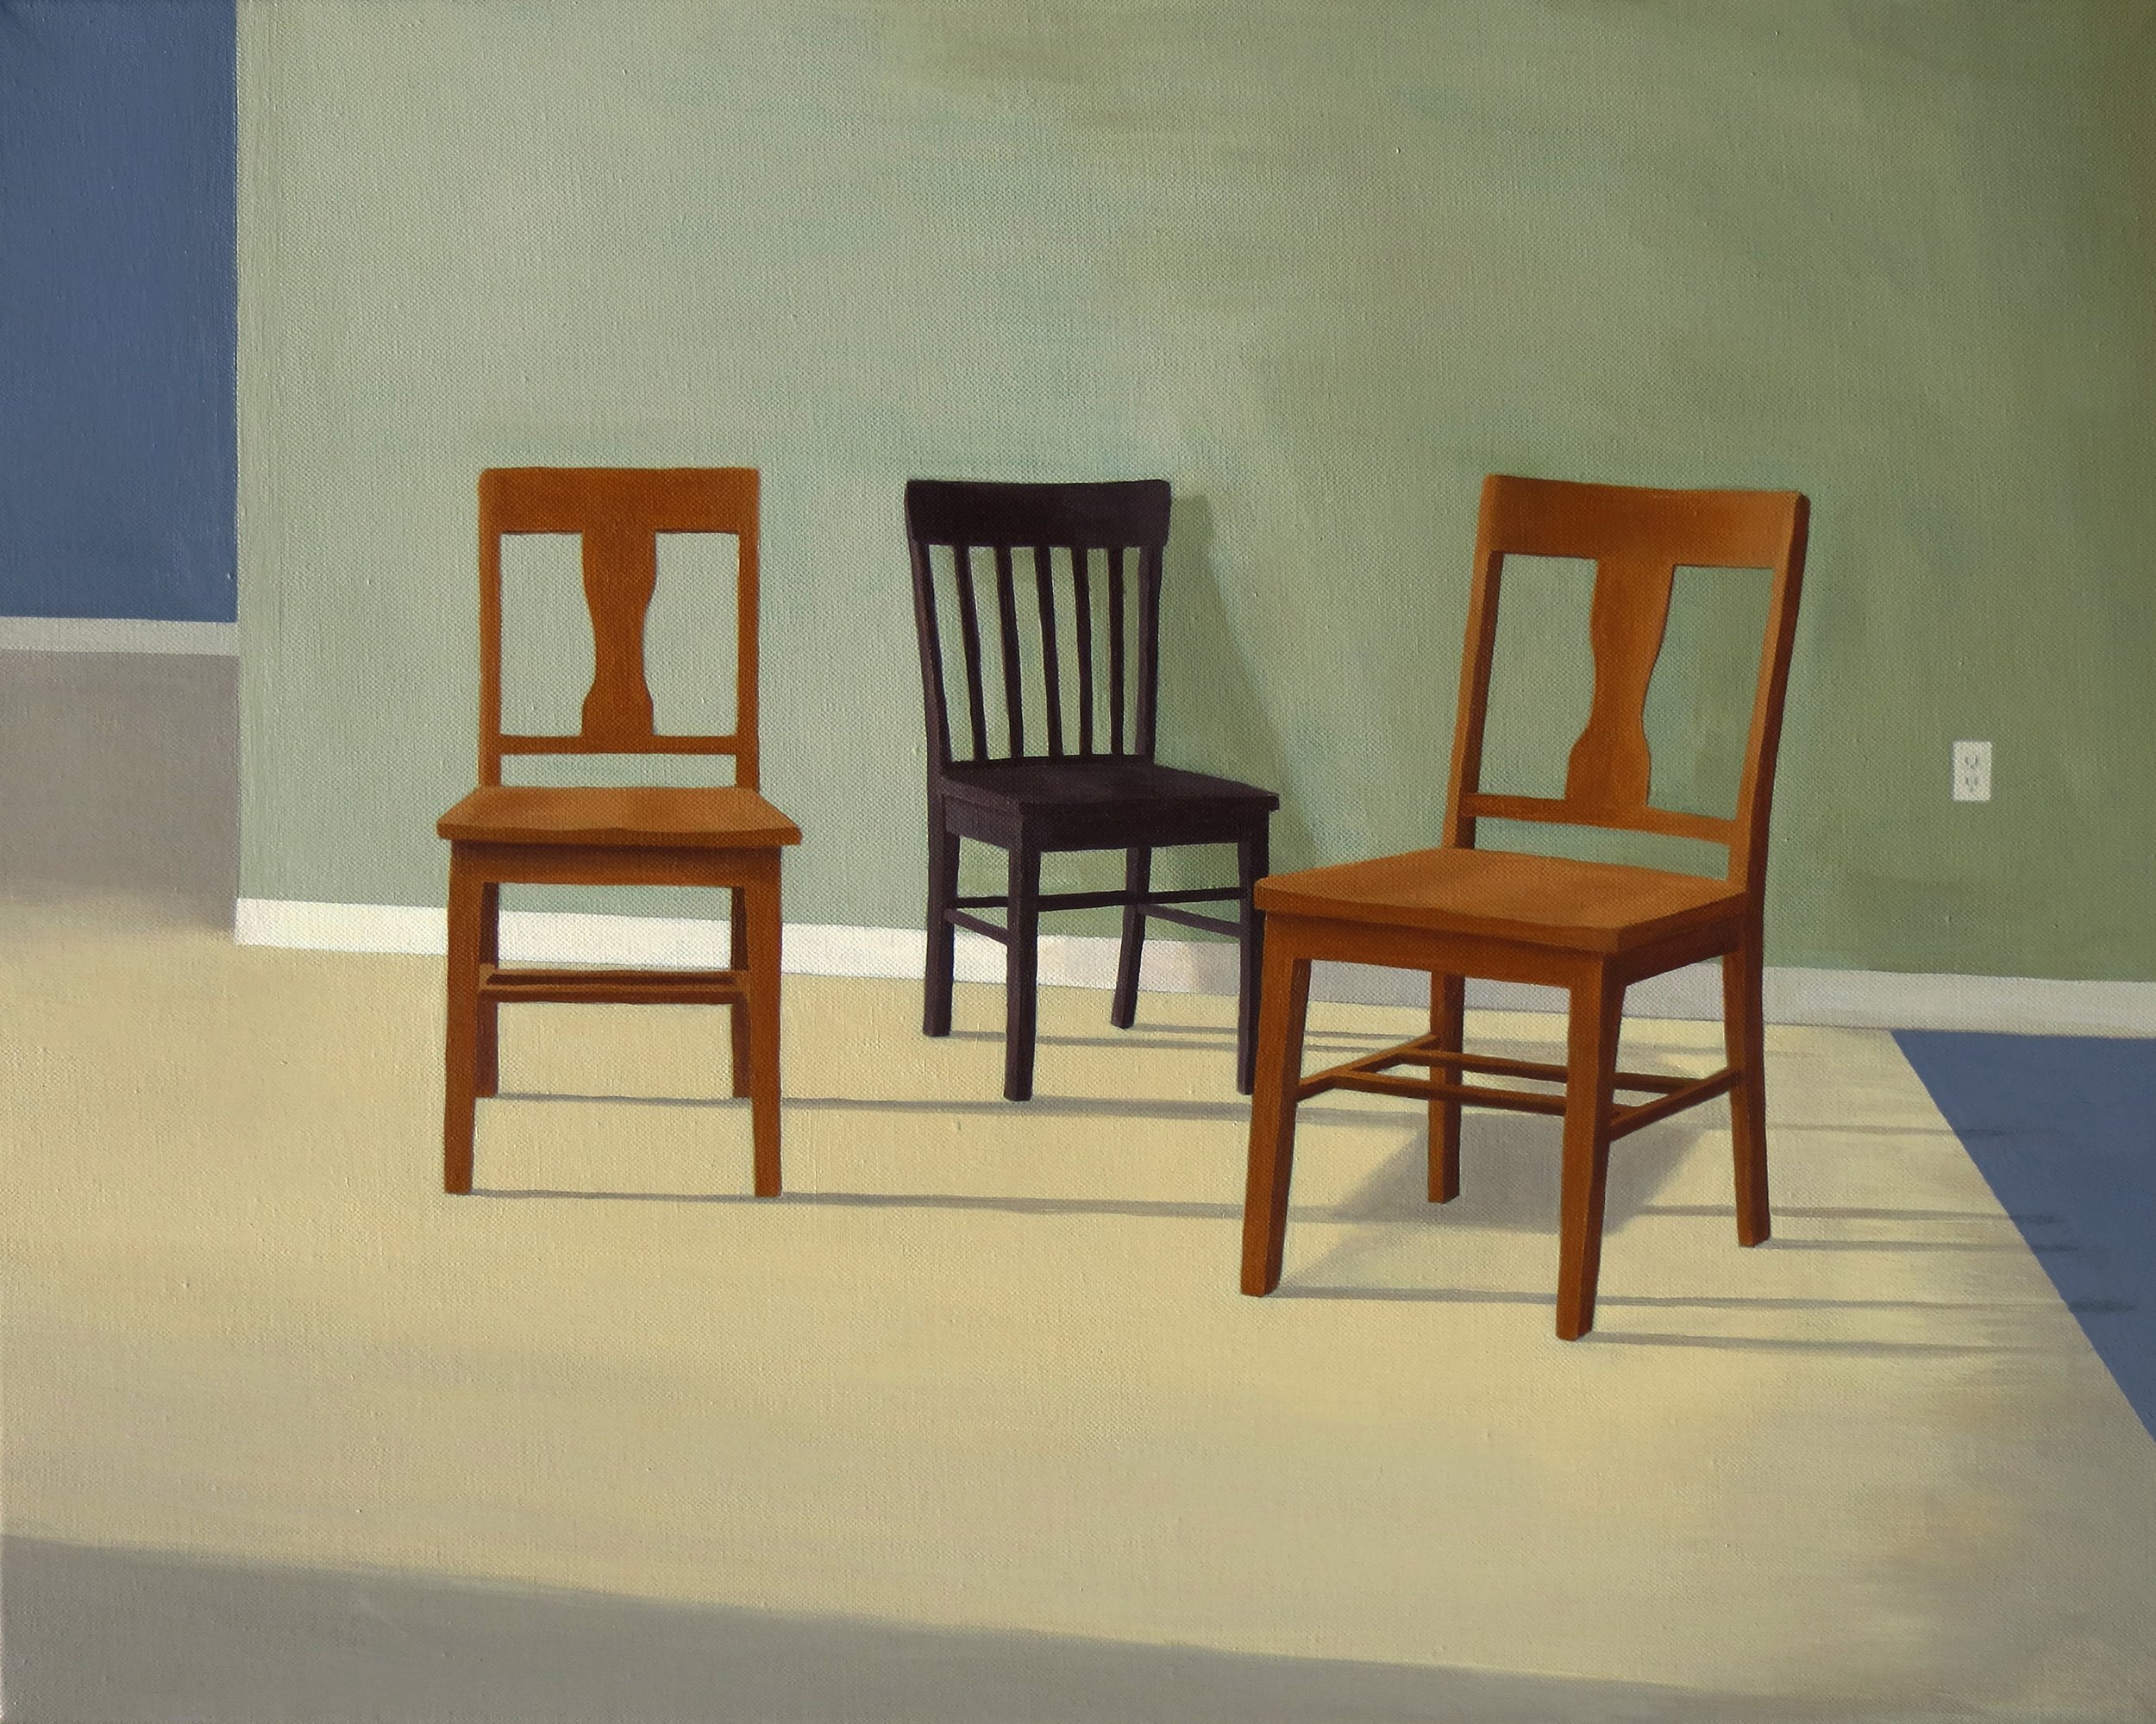 Three Chairs I